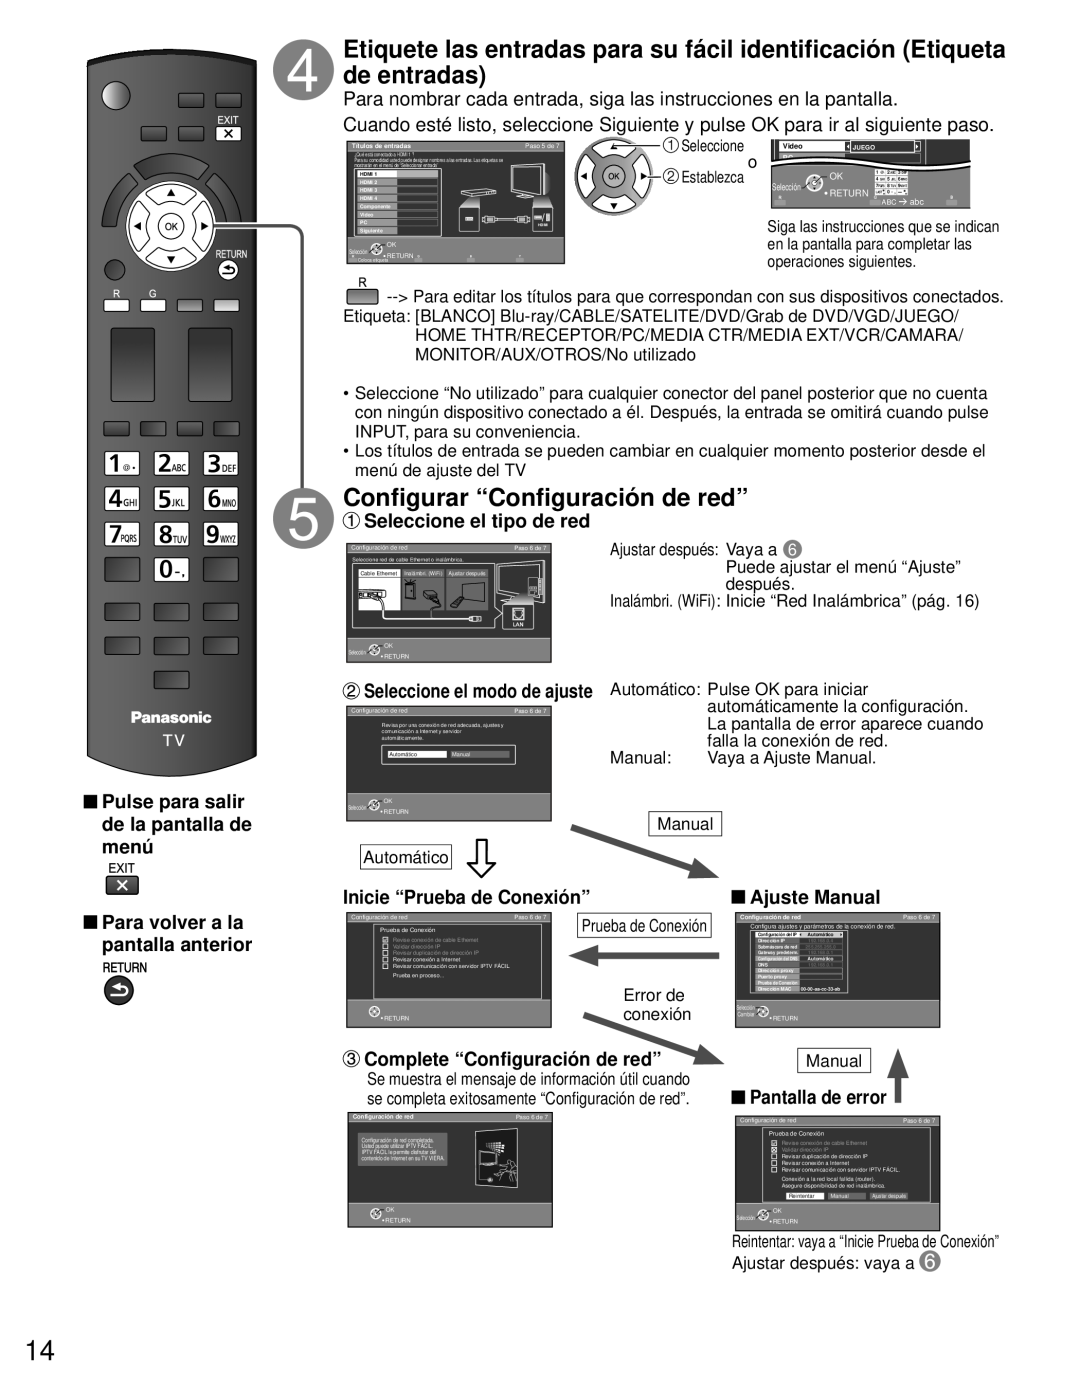 Panasonic TC-L42E3 Configurar “Configuración de red”, Para nombrar cada entrada, siga las instrucciones en la pantalla 